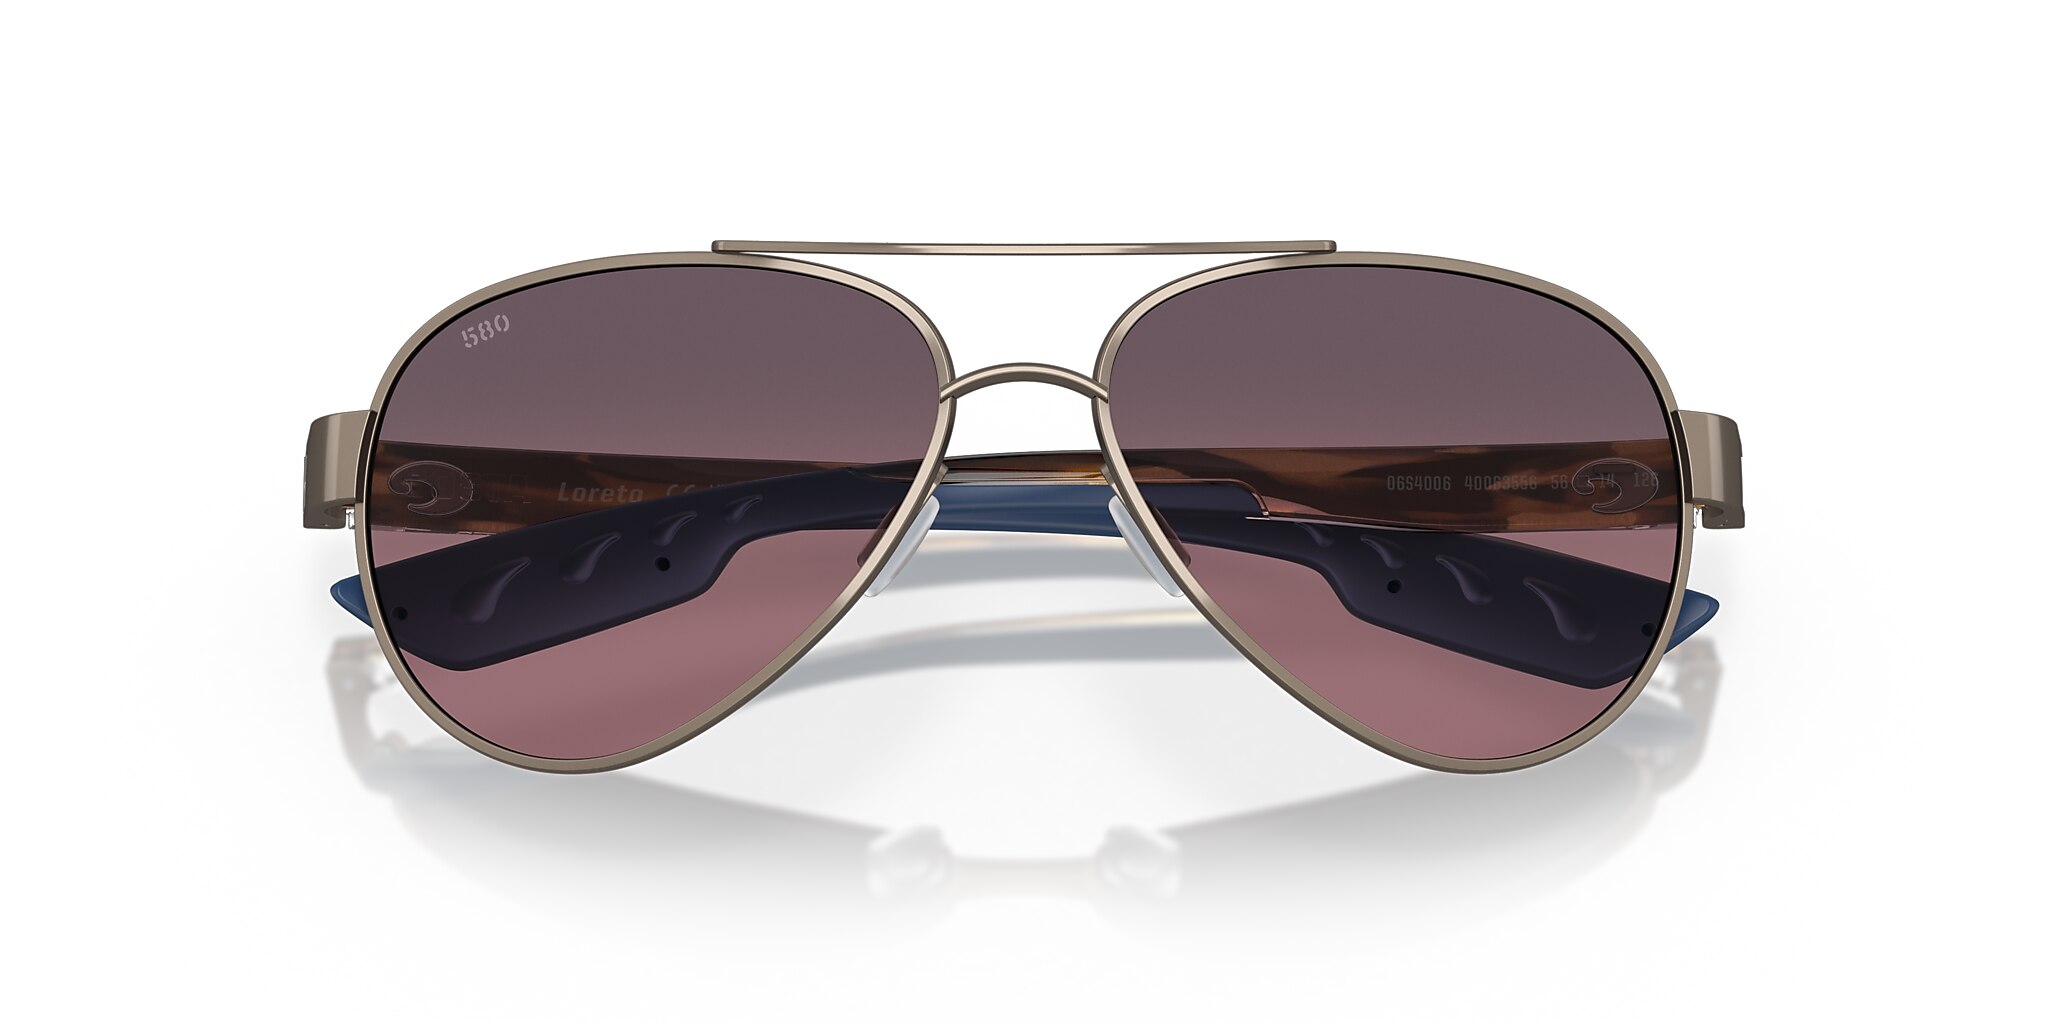 Loreto Polarized Sunglasses in Rose Gradient | Costa Del Mar®